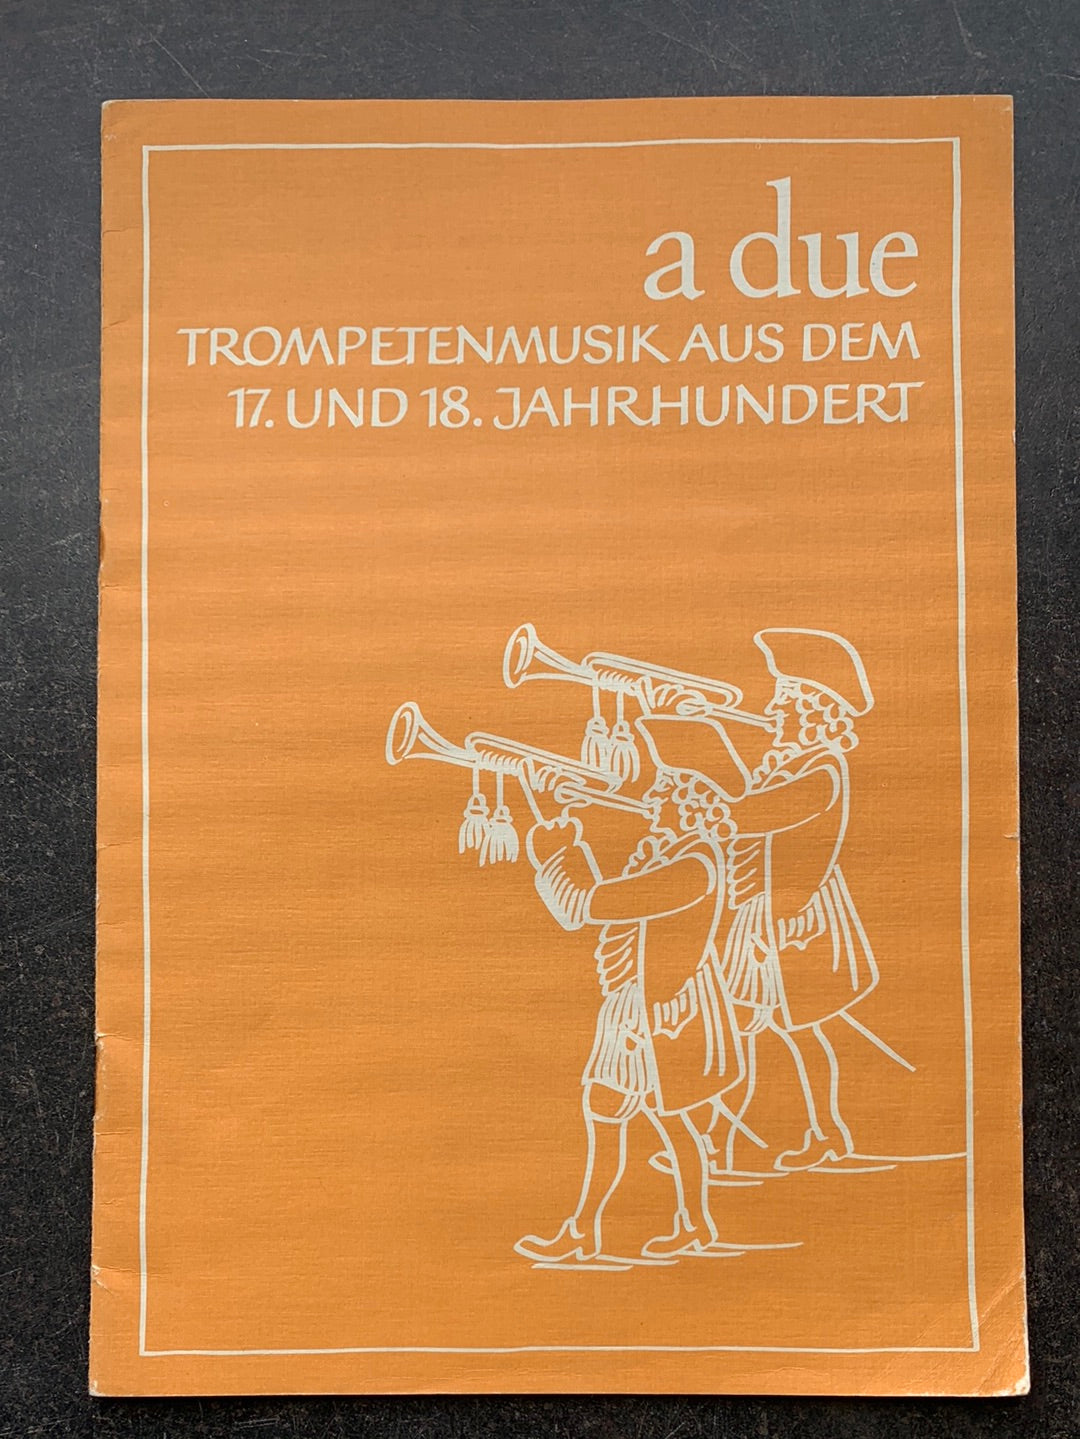 a due - Trompetenmusik aus dem 17. und 18. Jahrhundert (Trompete)